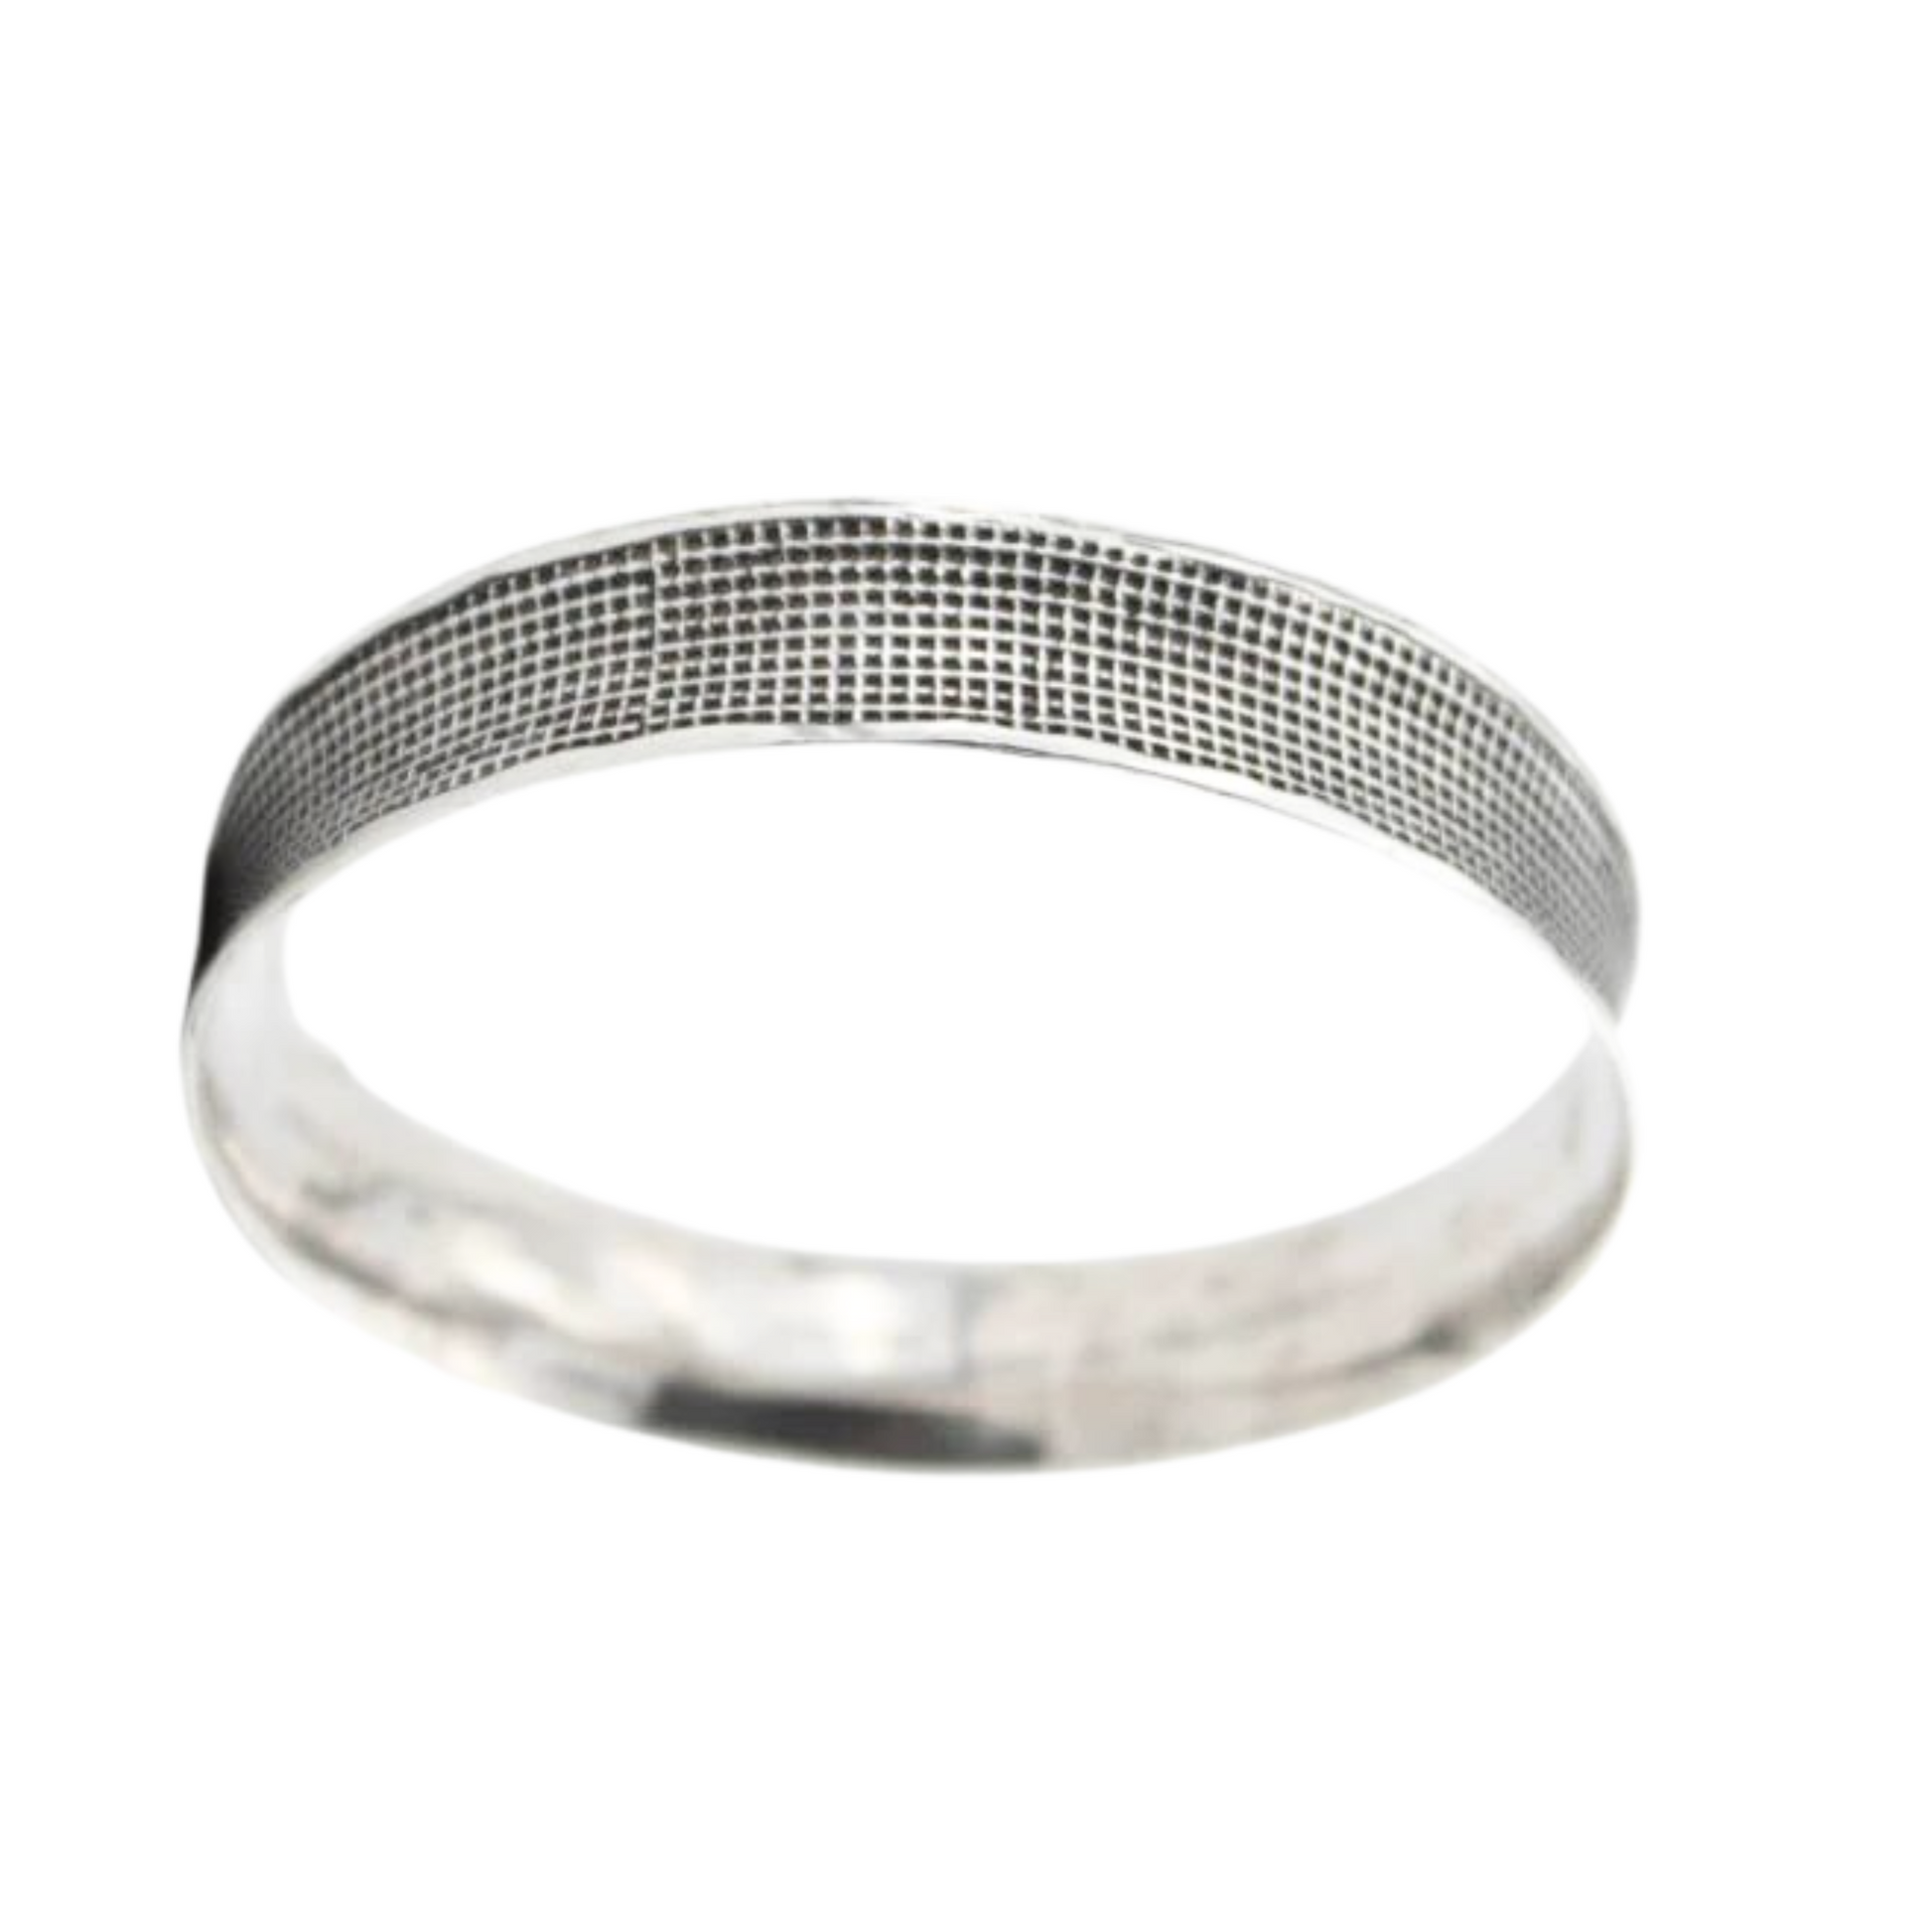 Sterling Silver grid pattern Bangle Bracelet, Blacked Silver Bracelet, Unisex Bracelet, Unisex Jewelry, Israeli Jewelry